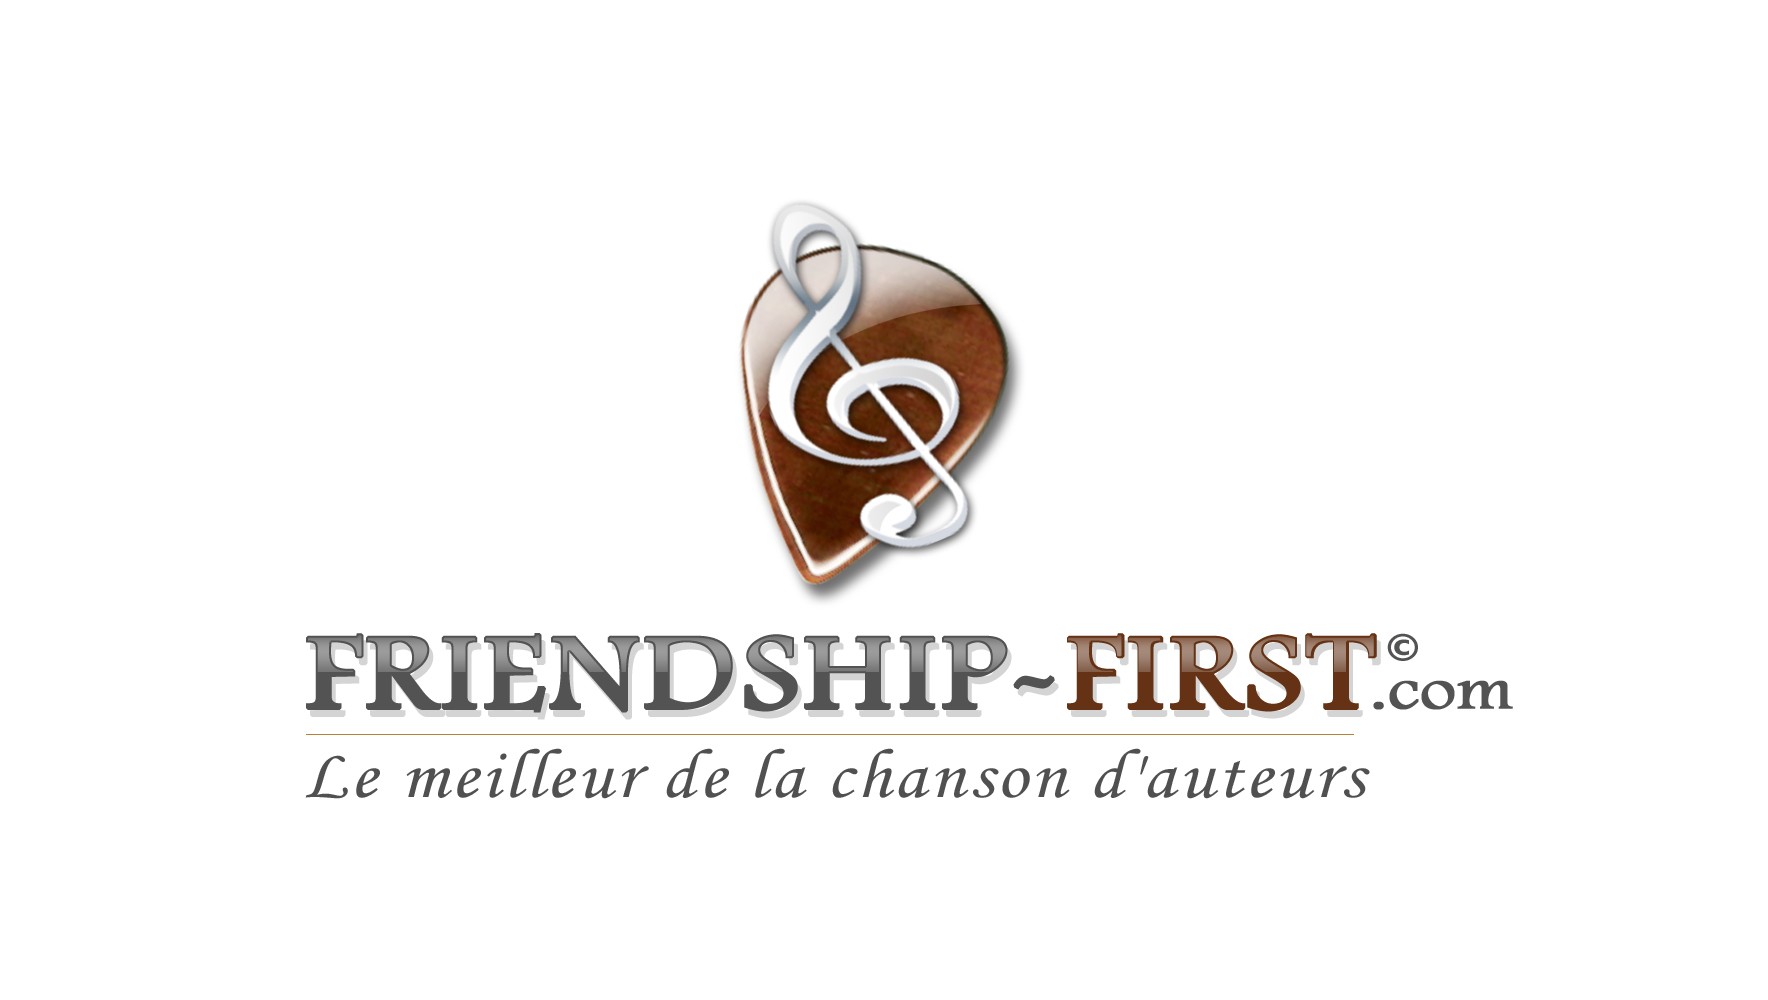 Friendship First